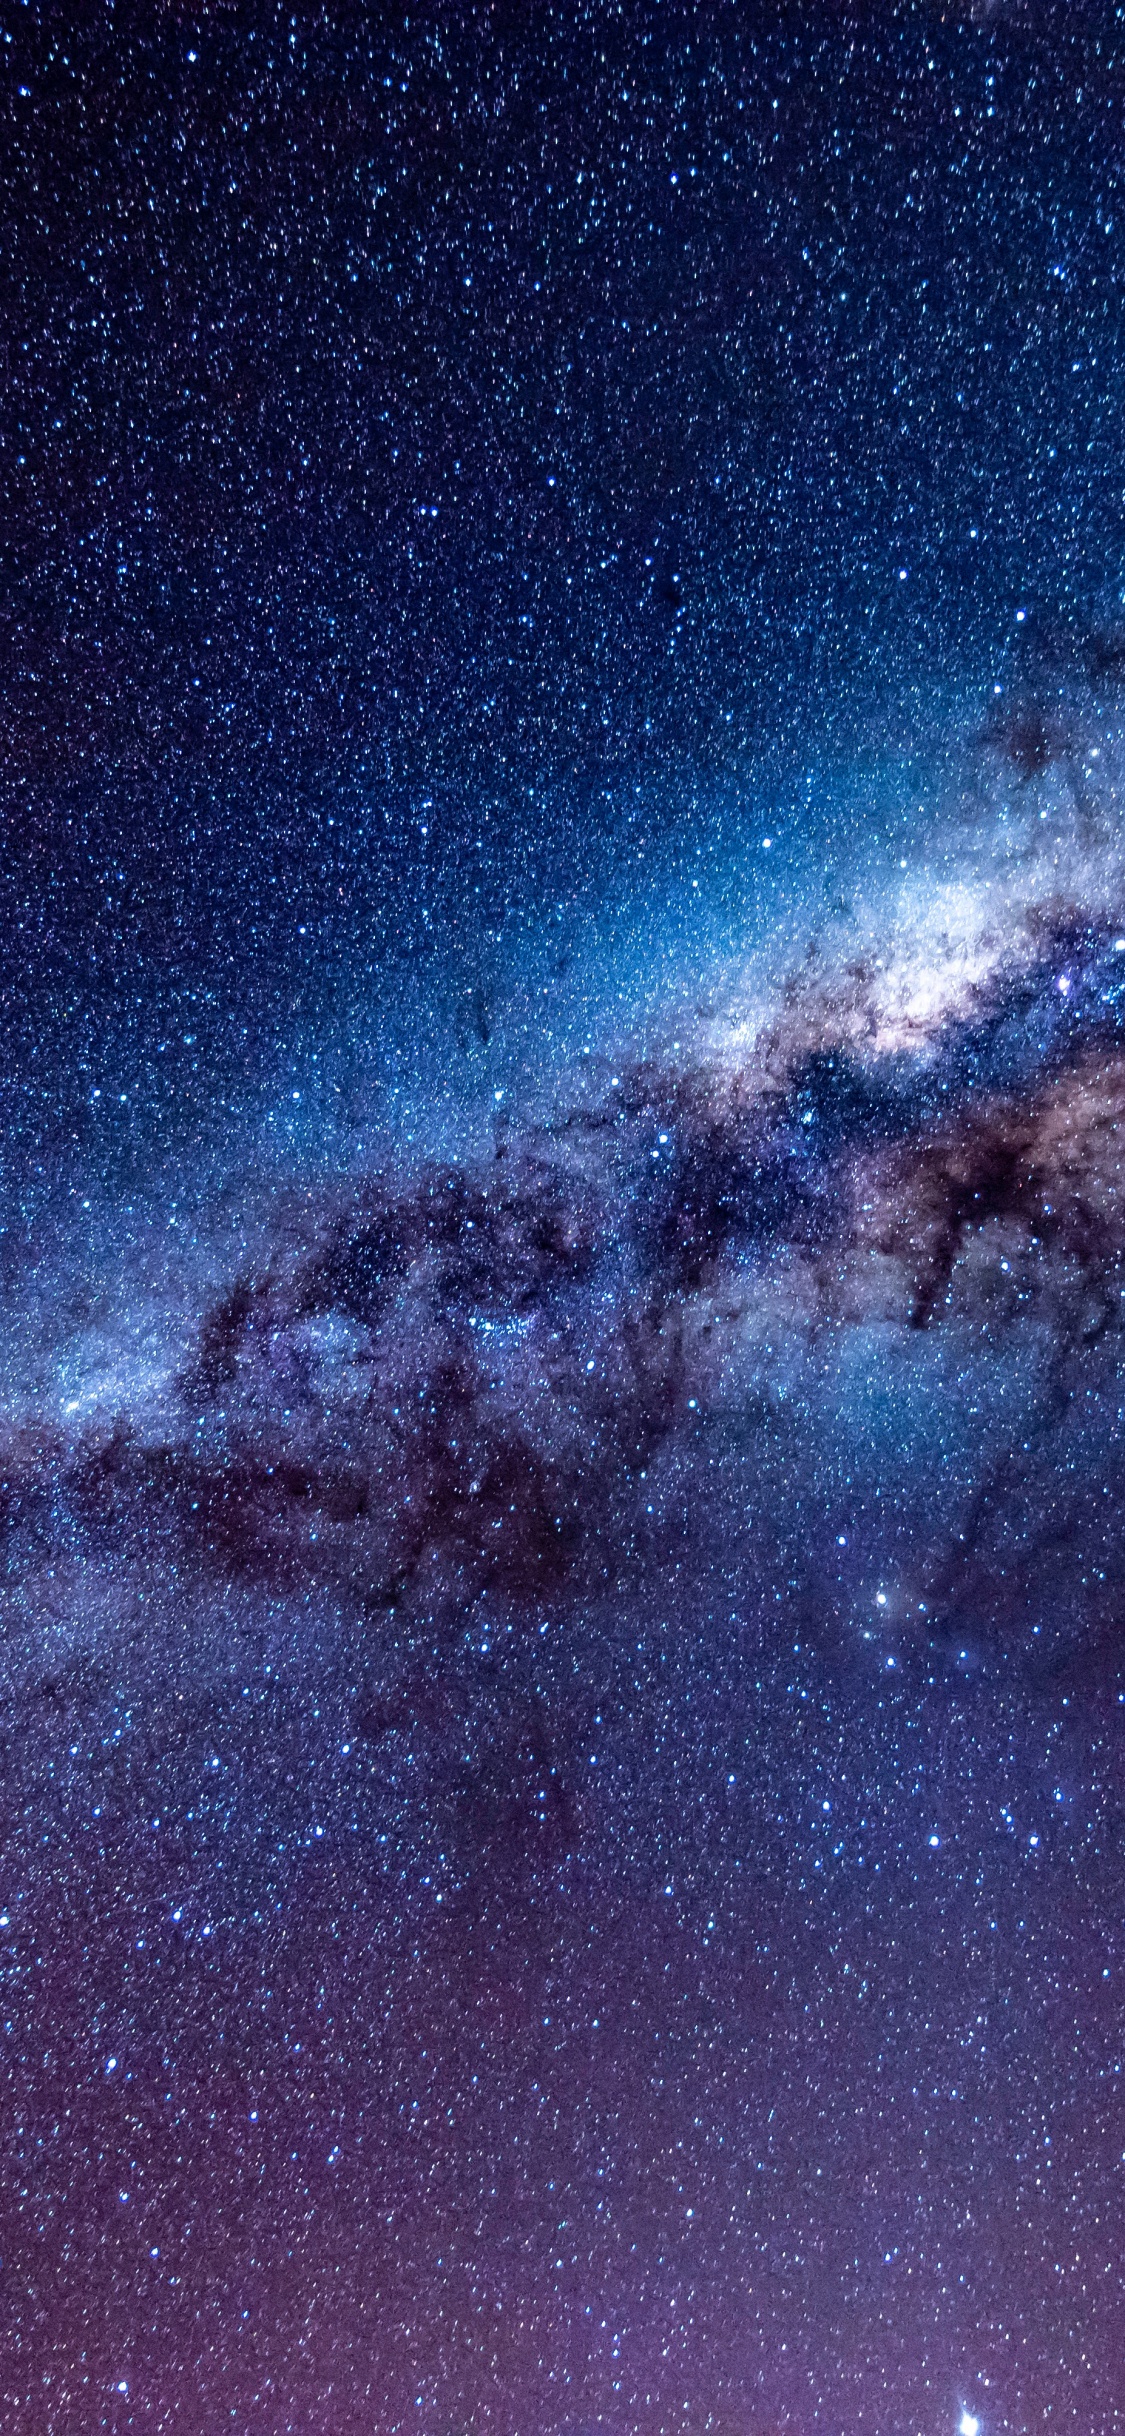 银河系, 天文学, 宇宙, 明星, 夜晚的天空 壁纸 1125x2436 允许